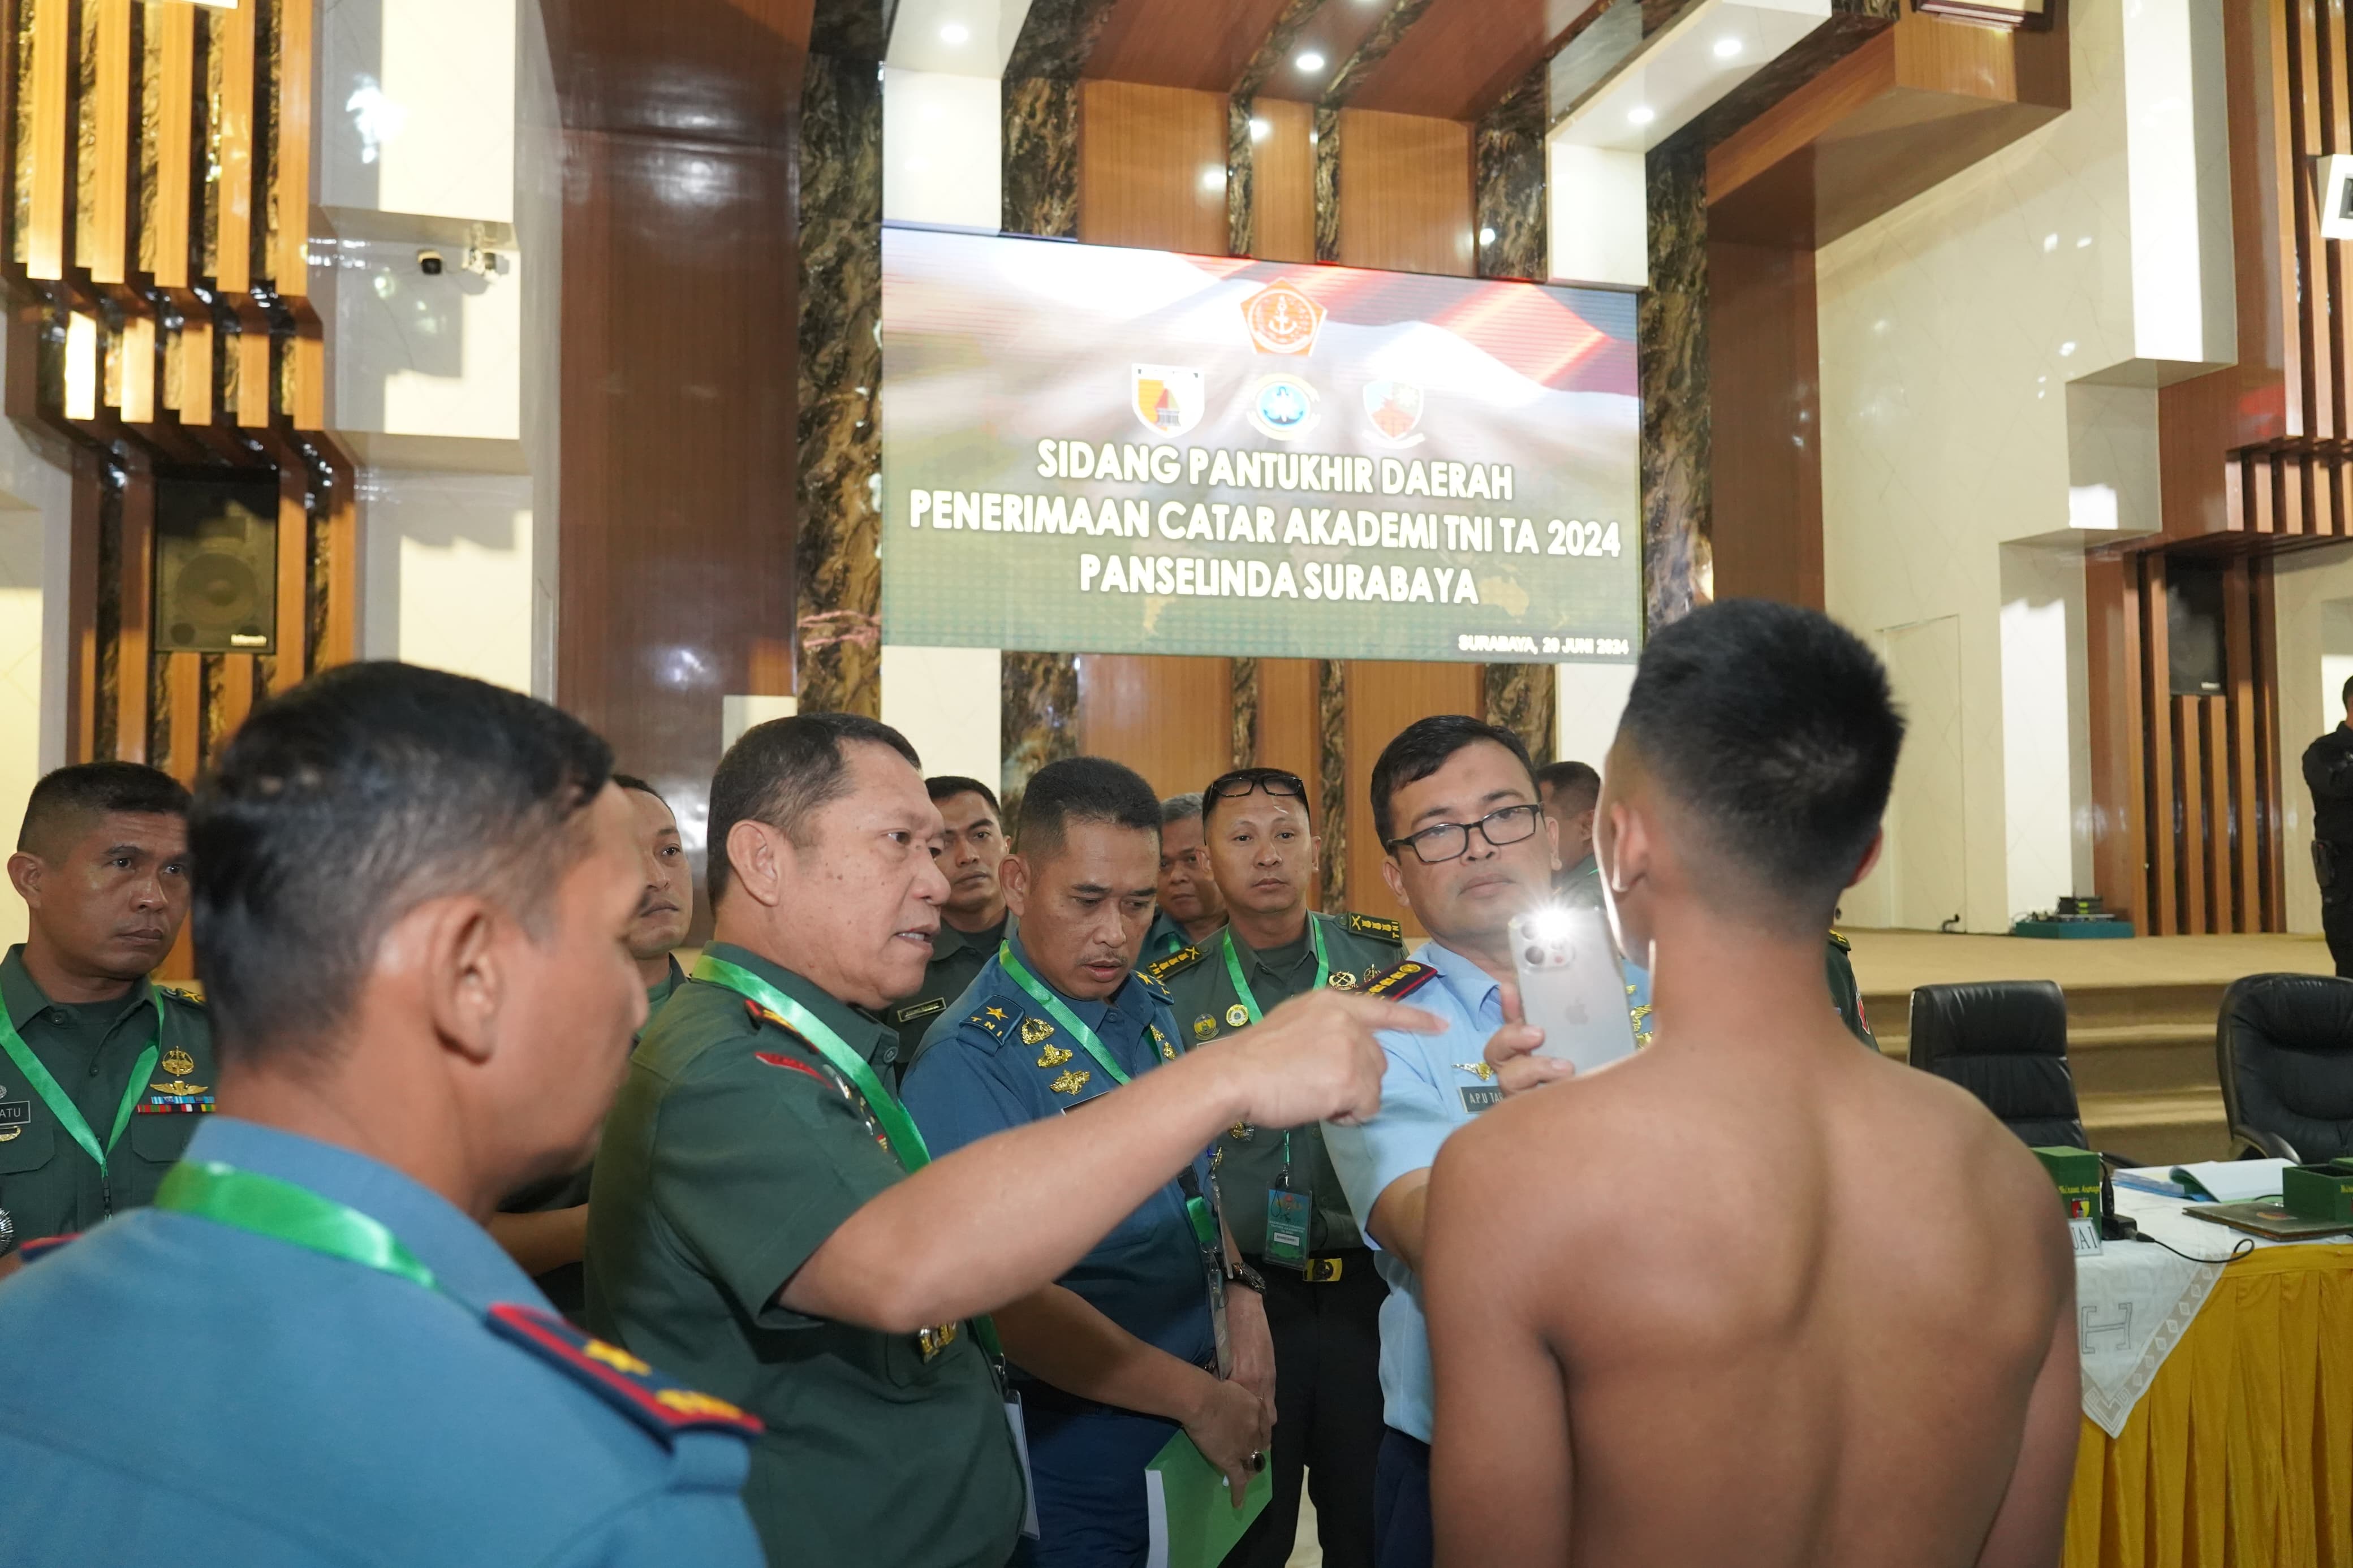 Ketua Panselinda Surabaya pimpin Pelaksanaan sidang Pantukhir Catar Akademi TNI